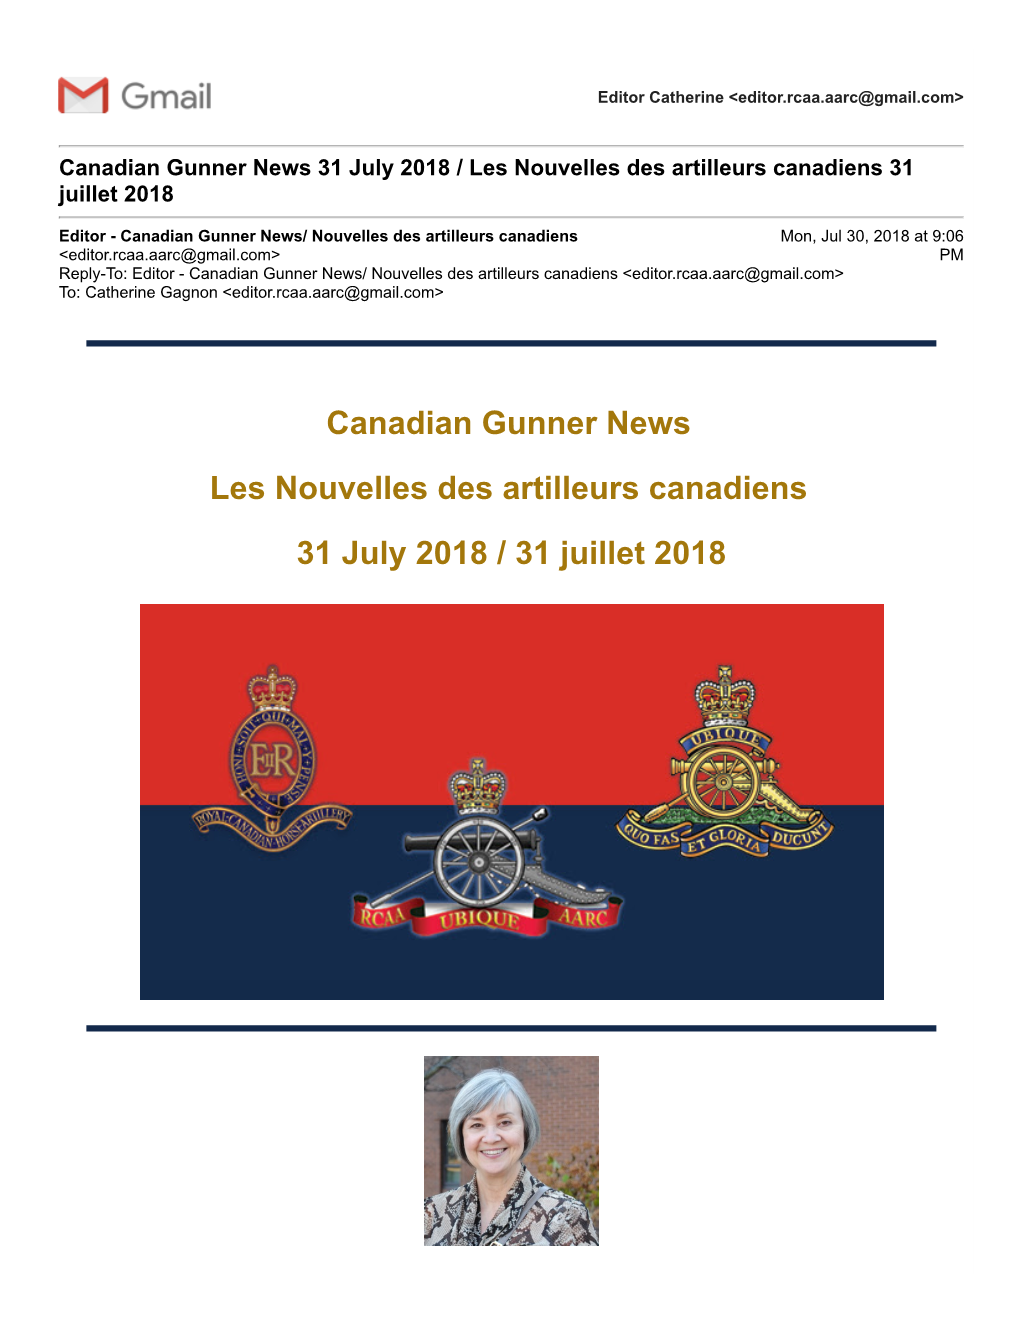 Canadian Gunner News Les Nouvelles Des Artilleurs Canadiens